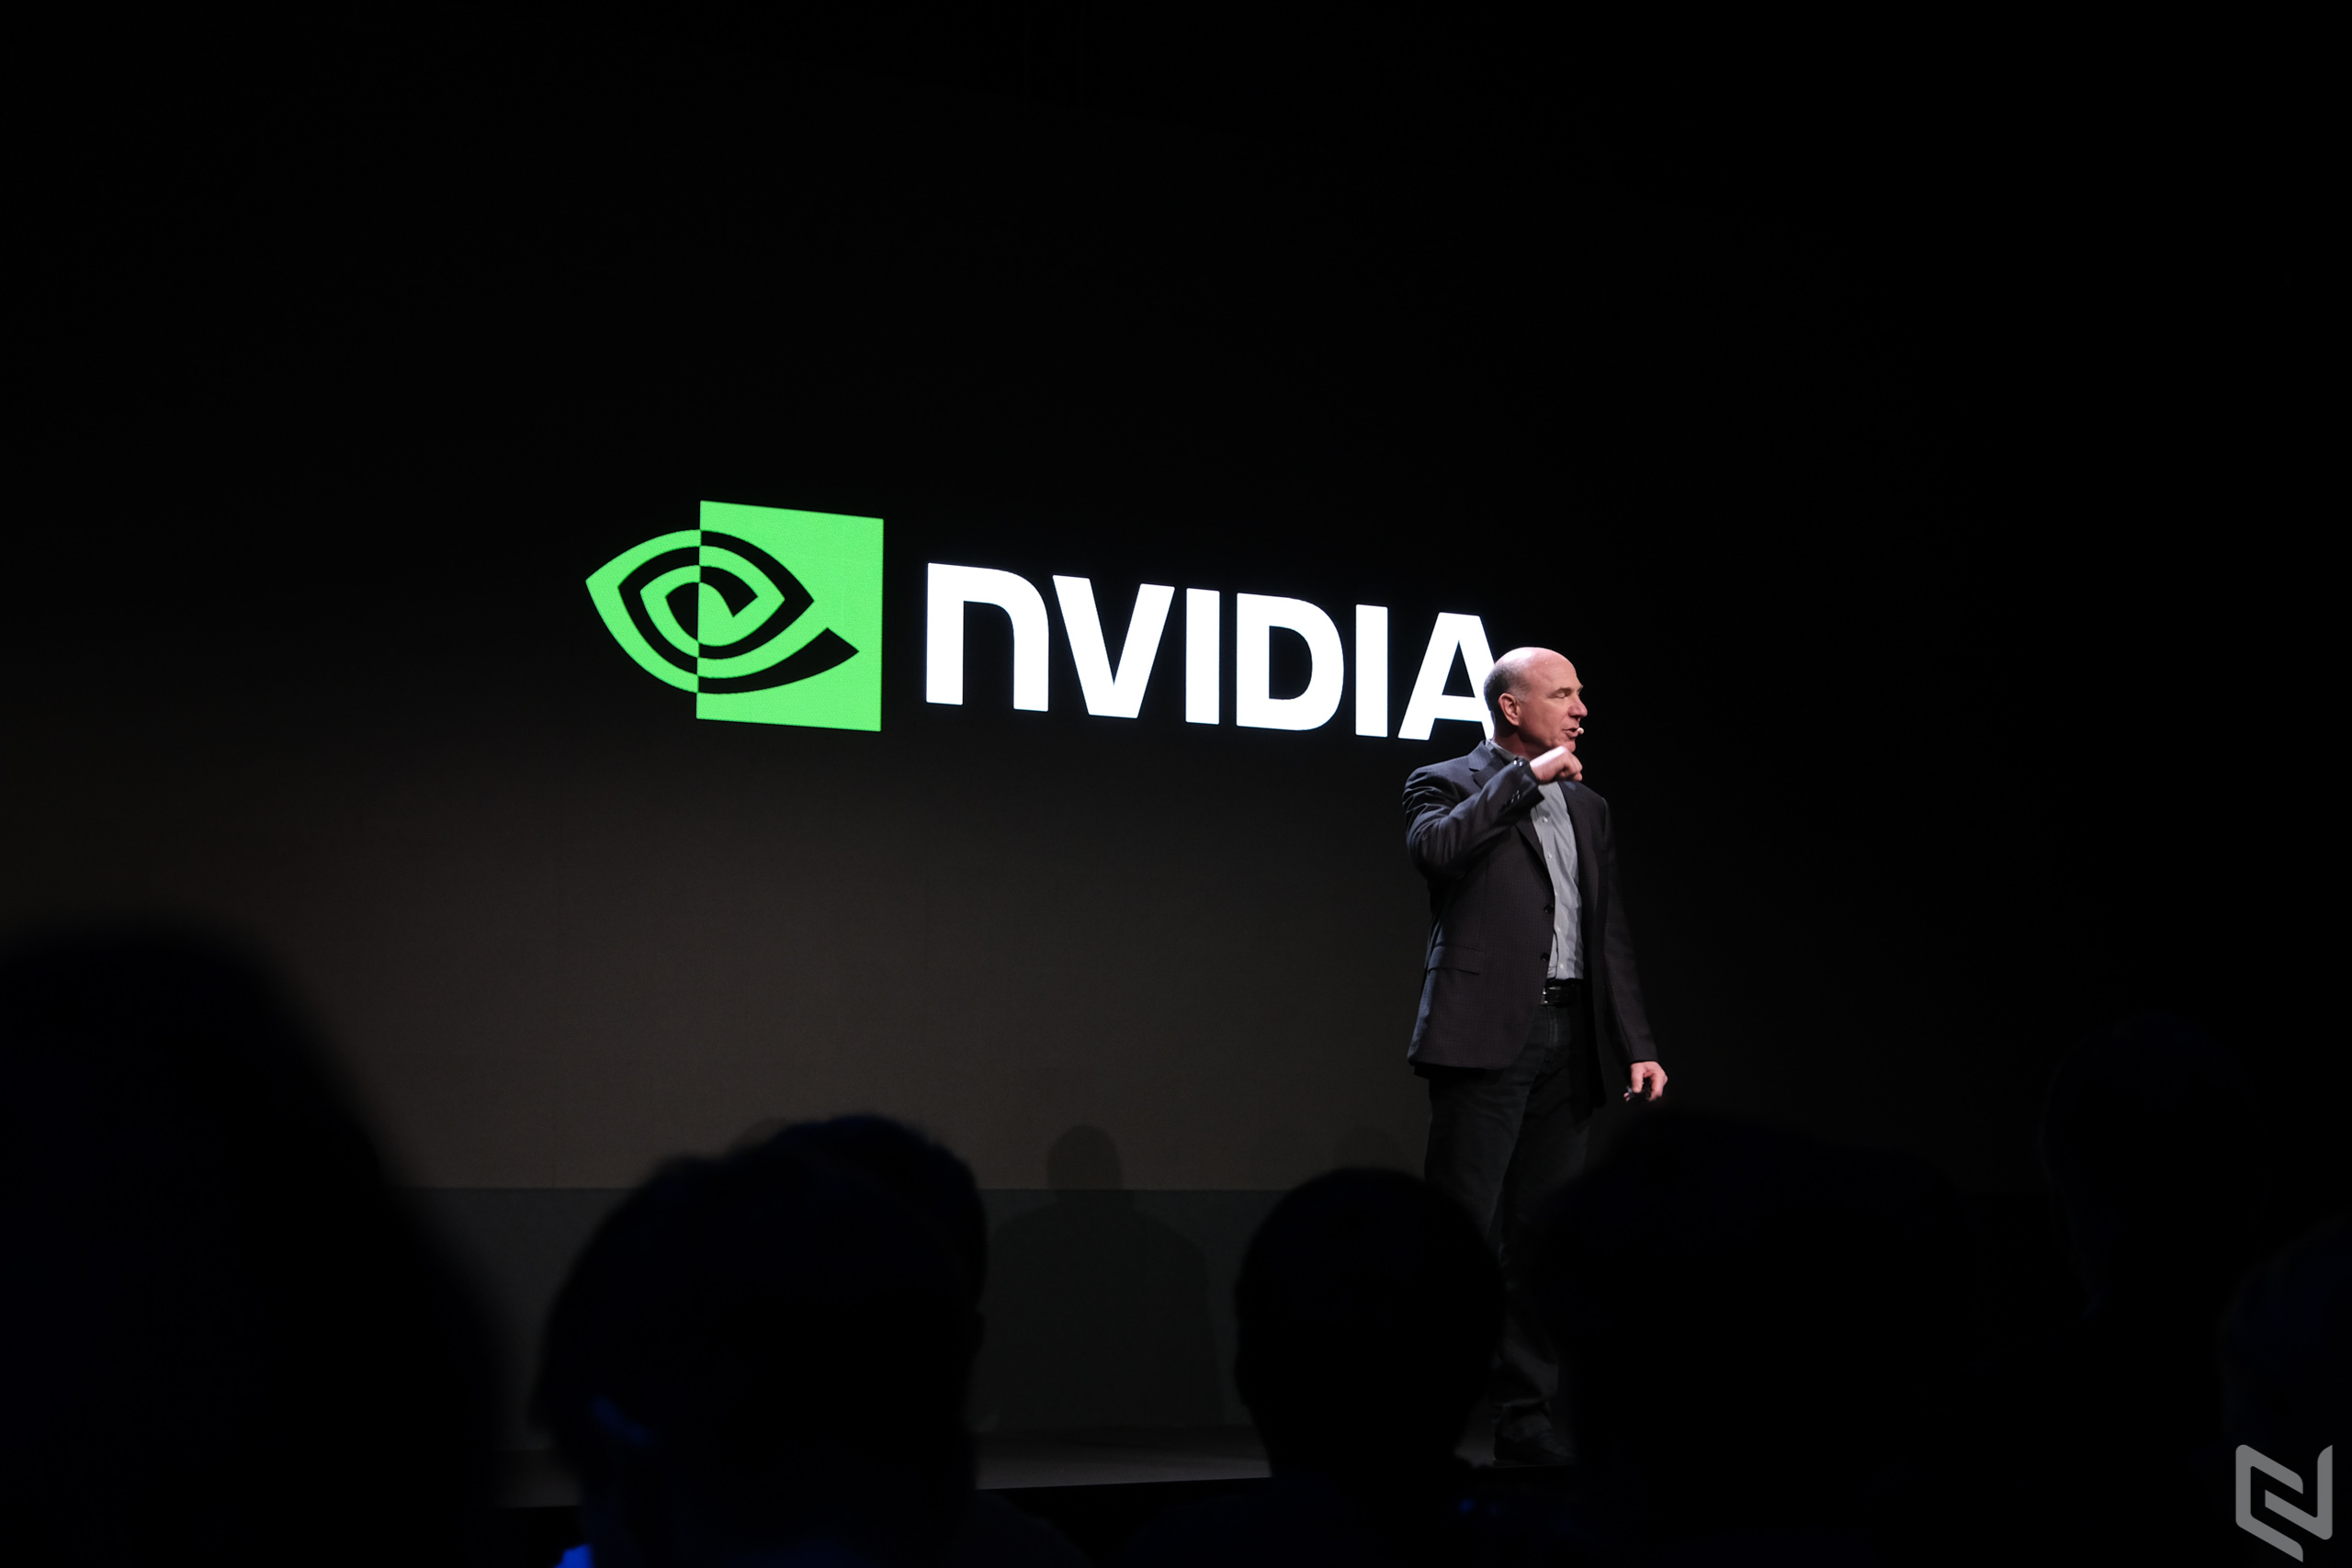 Công nghệ siêu máy tính EGX của NVIDIA có thể xử lý 1.6 terabytes trong một giây